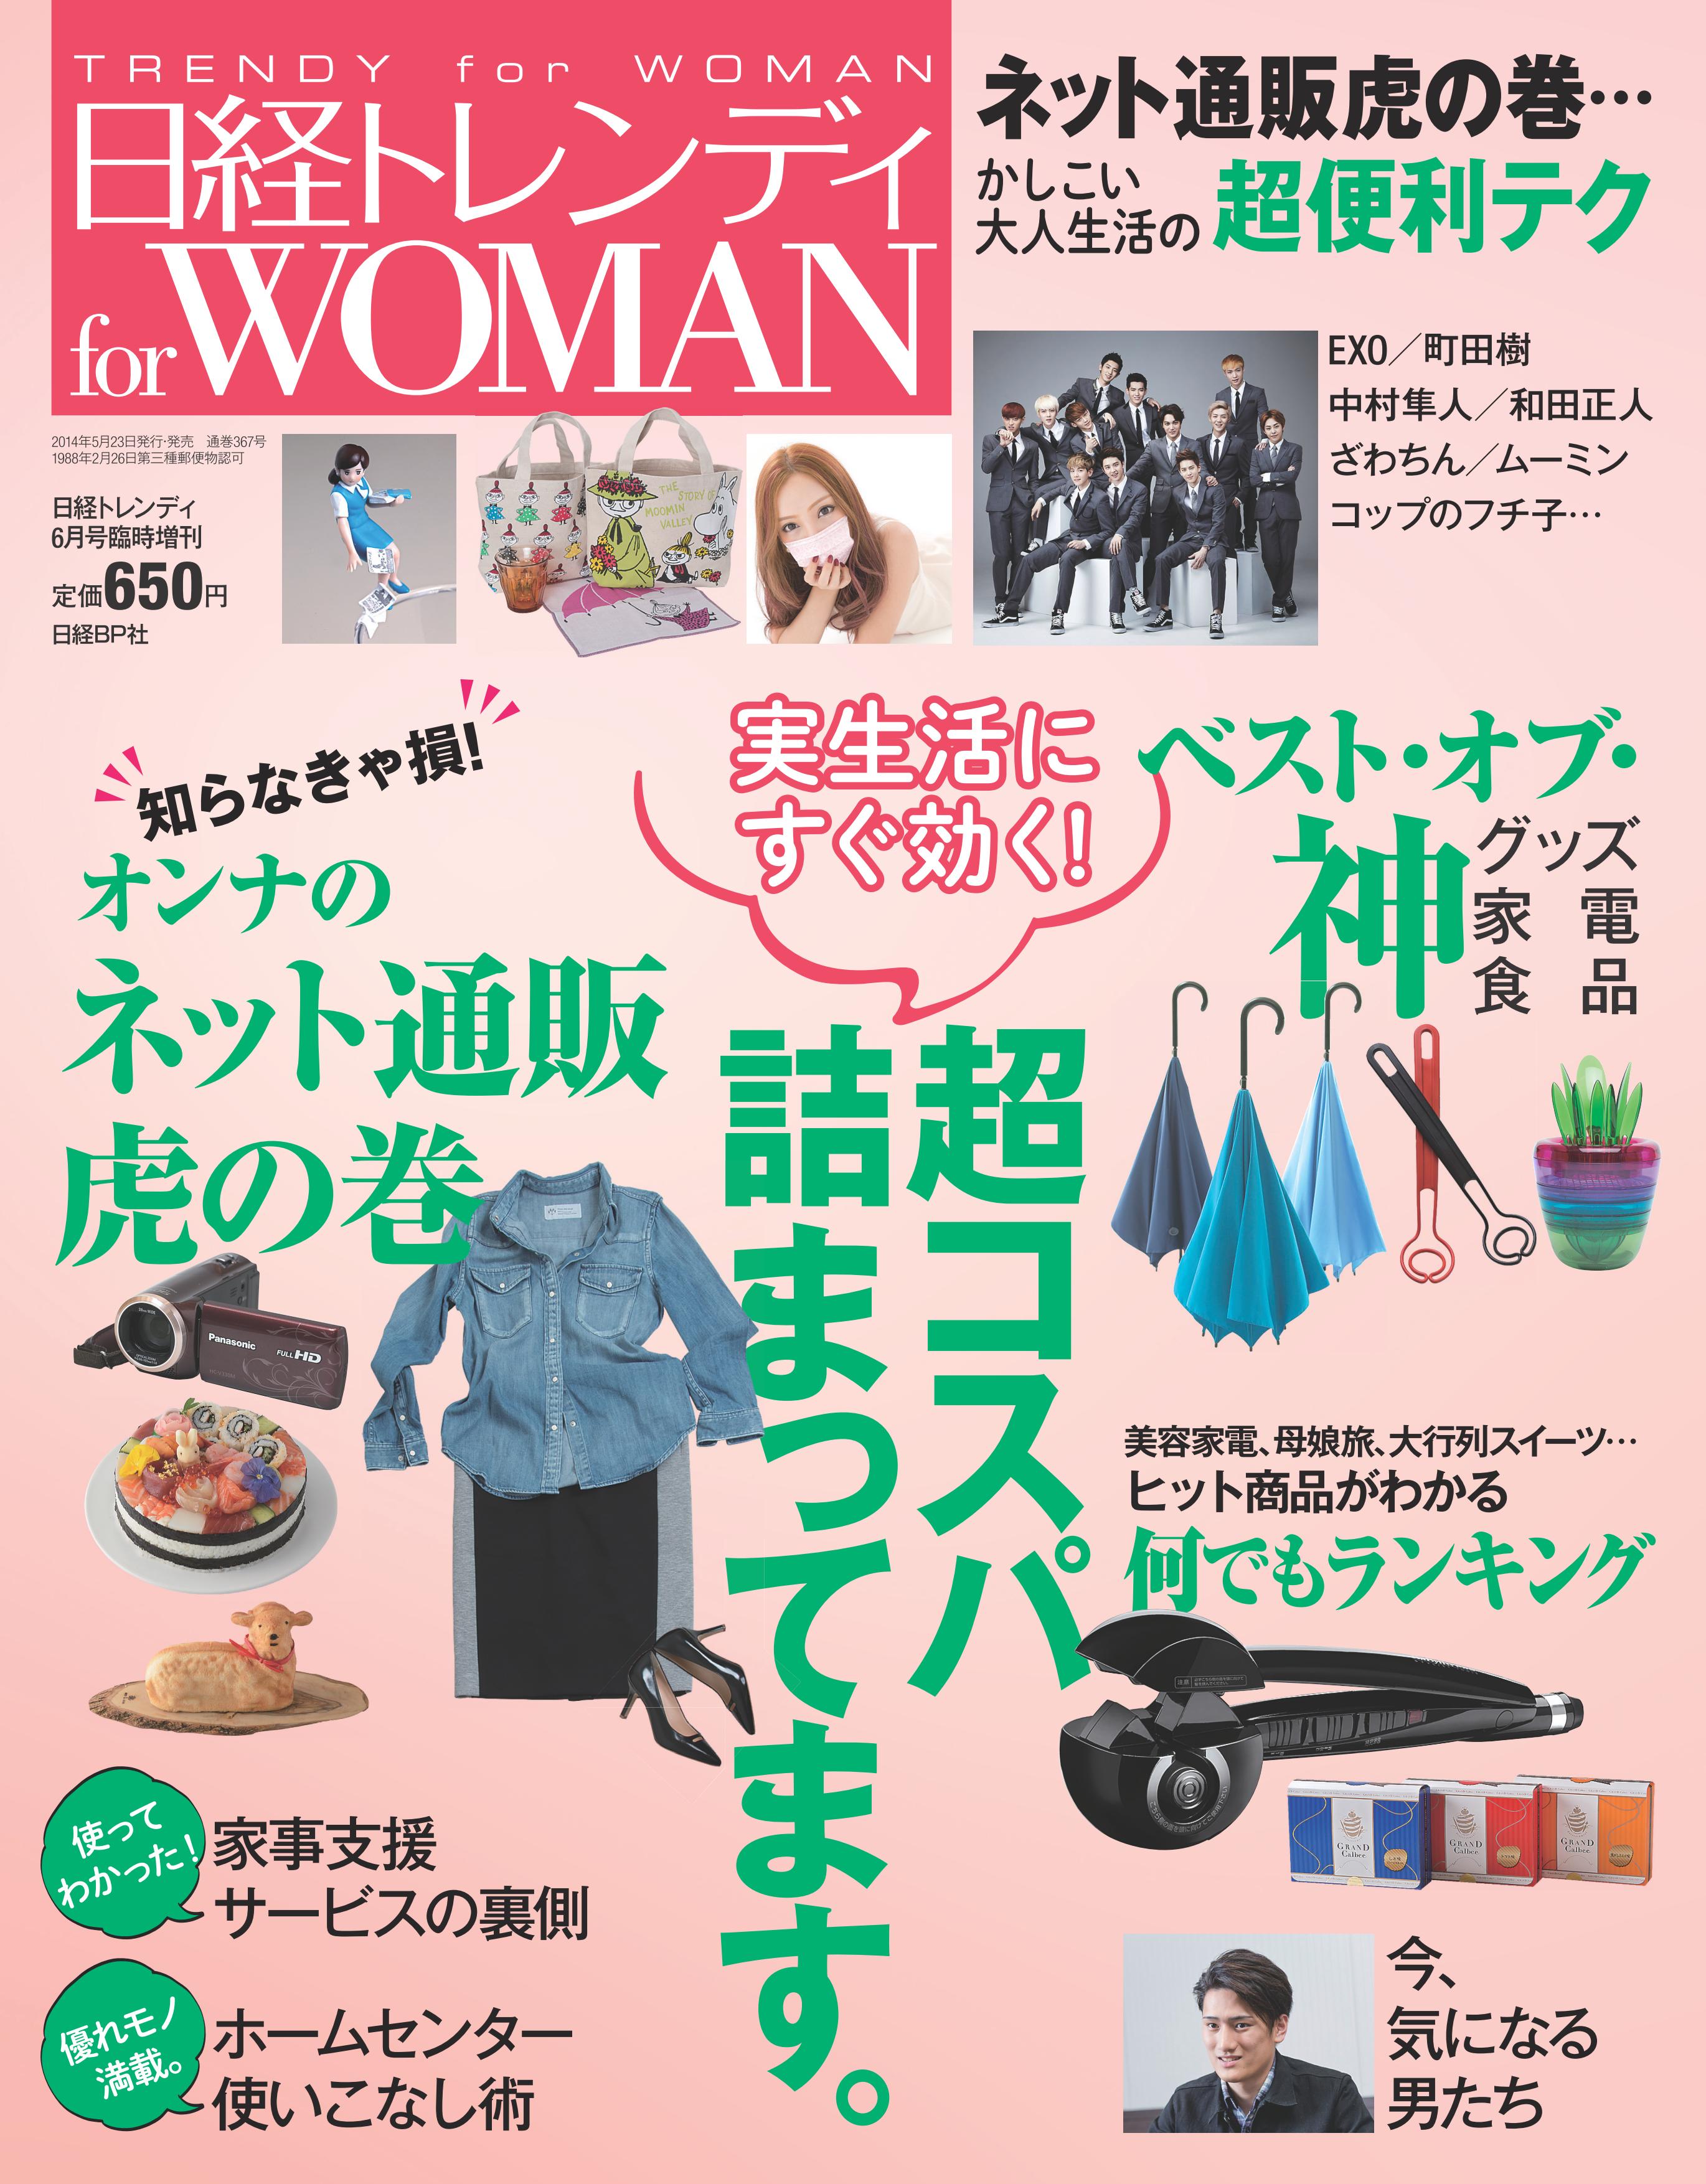 日経トレンディ 6月号臨時増刊「日経トレンディ for WOMAN」